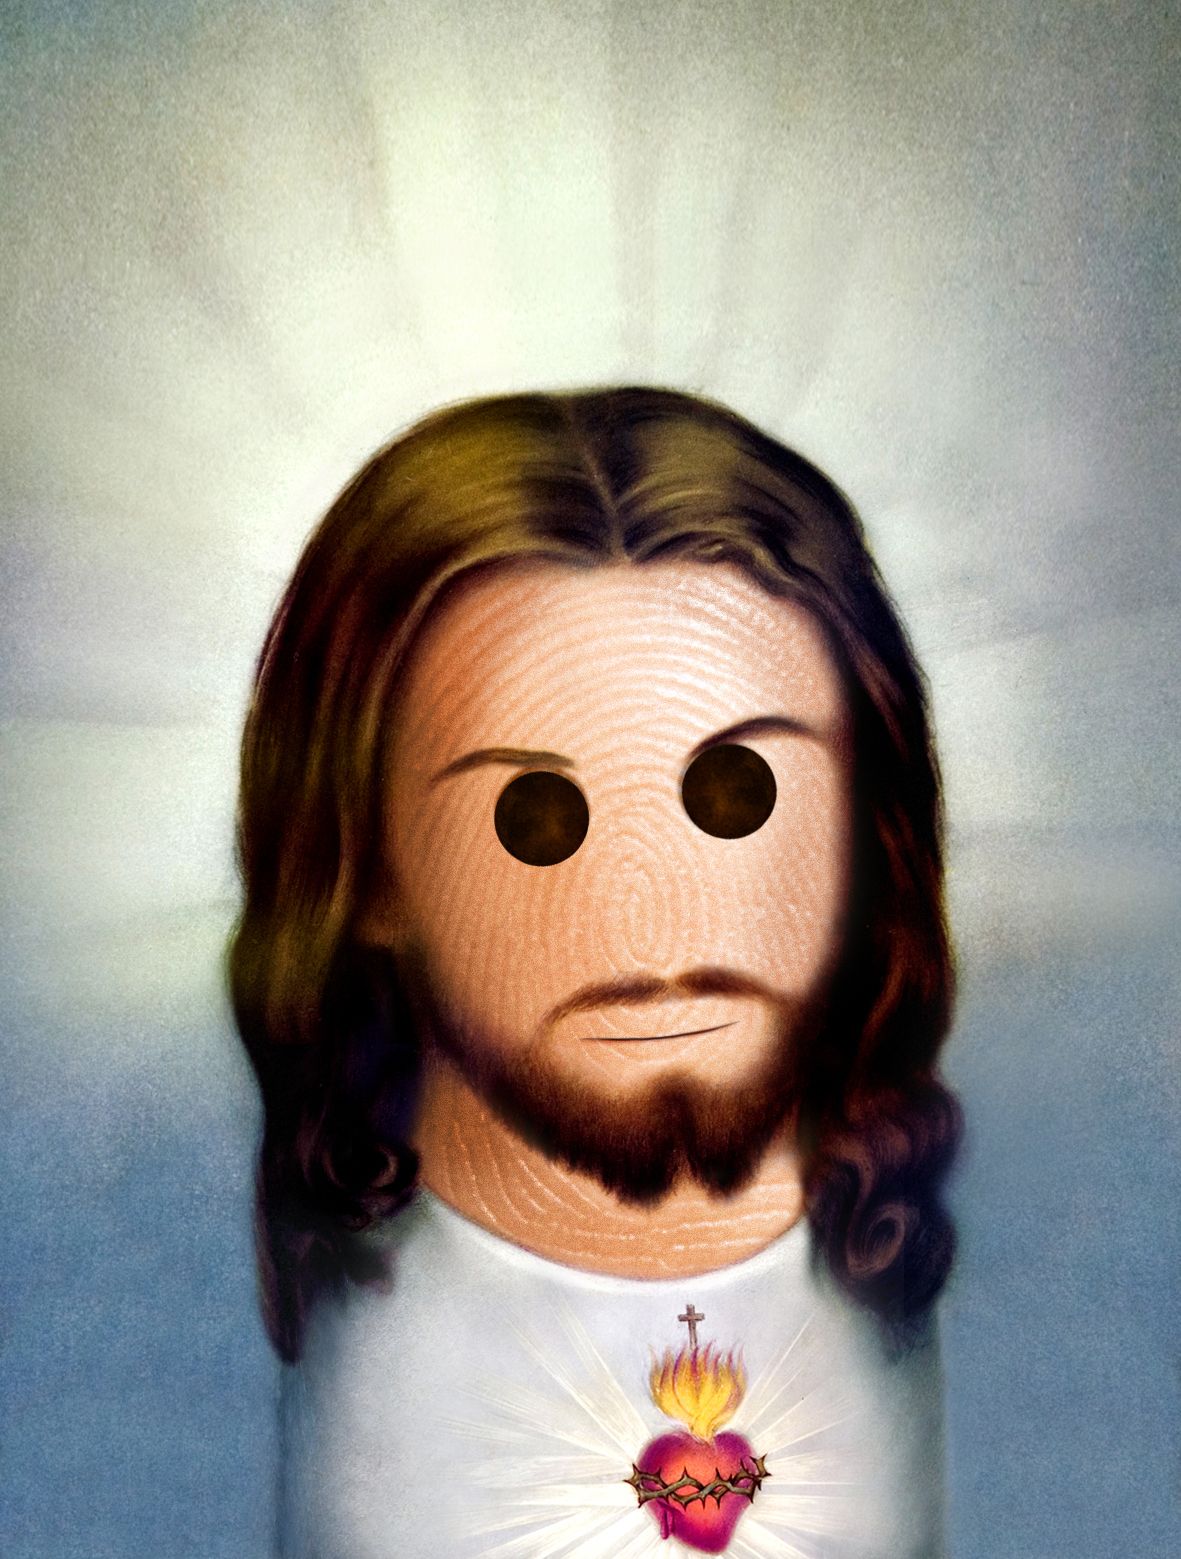 9 Jesus